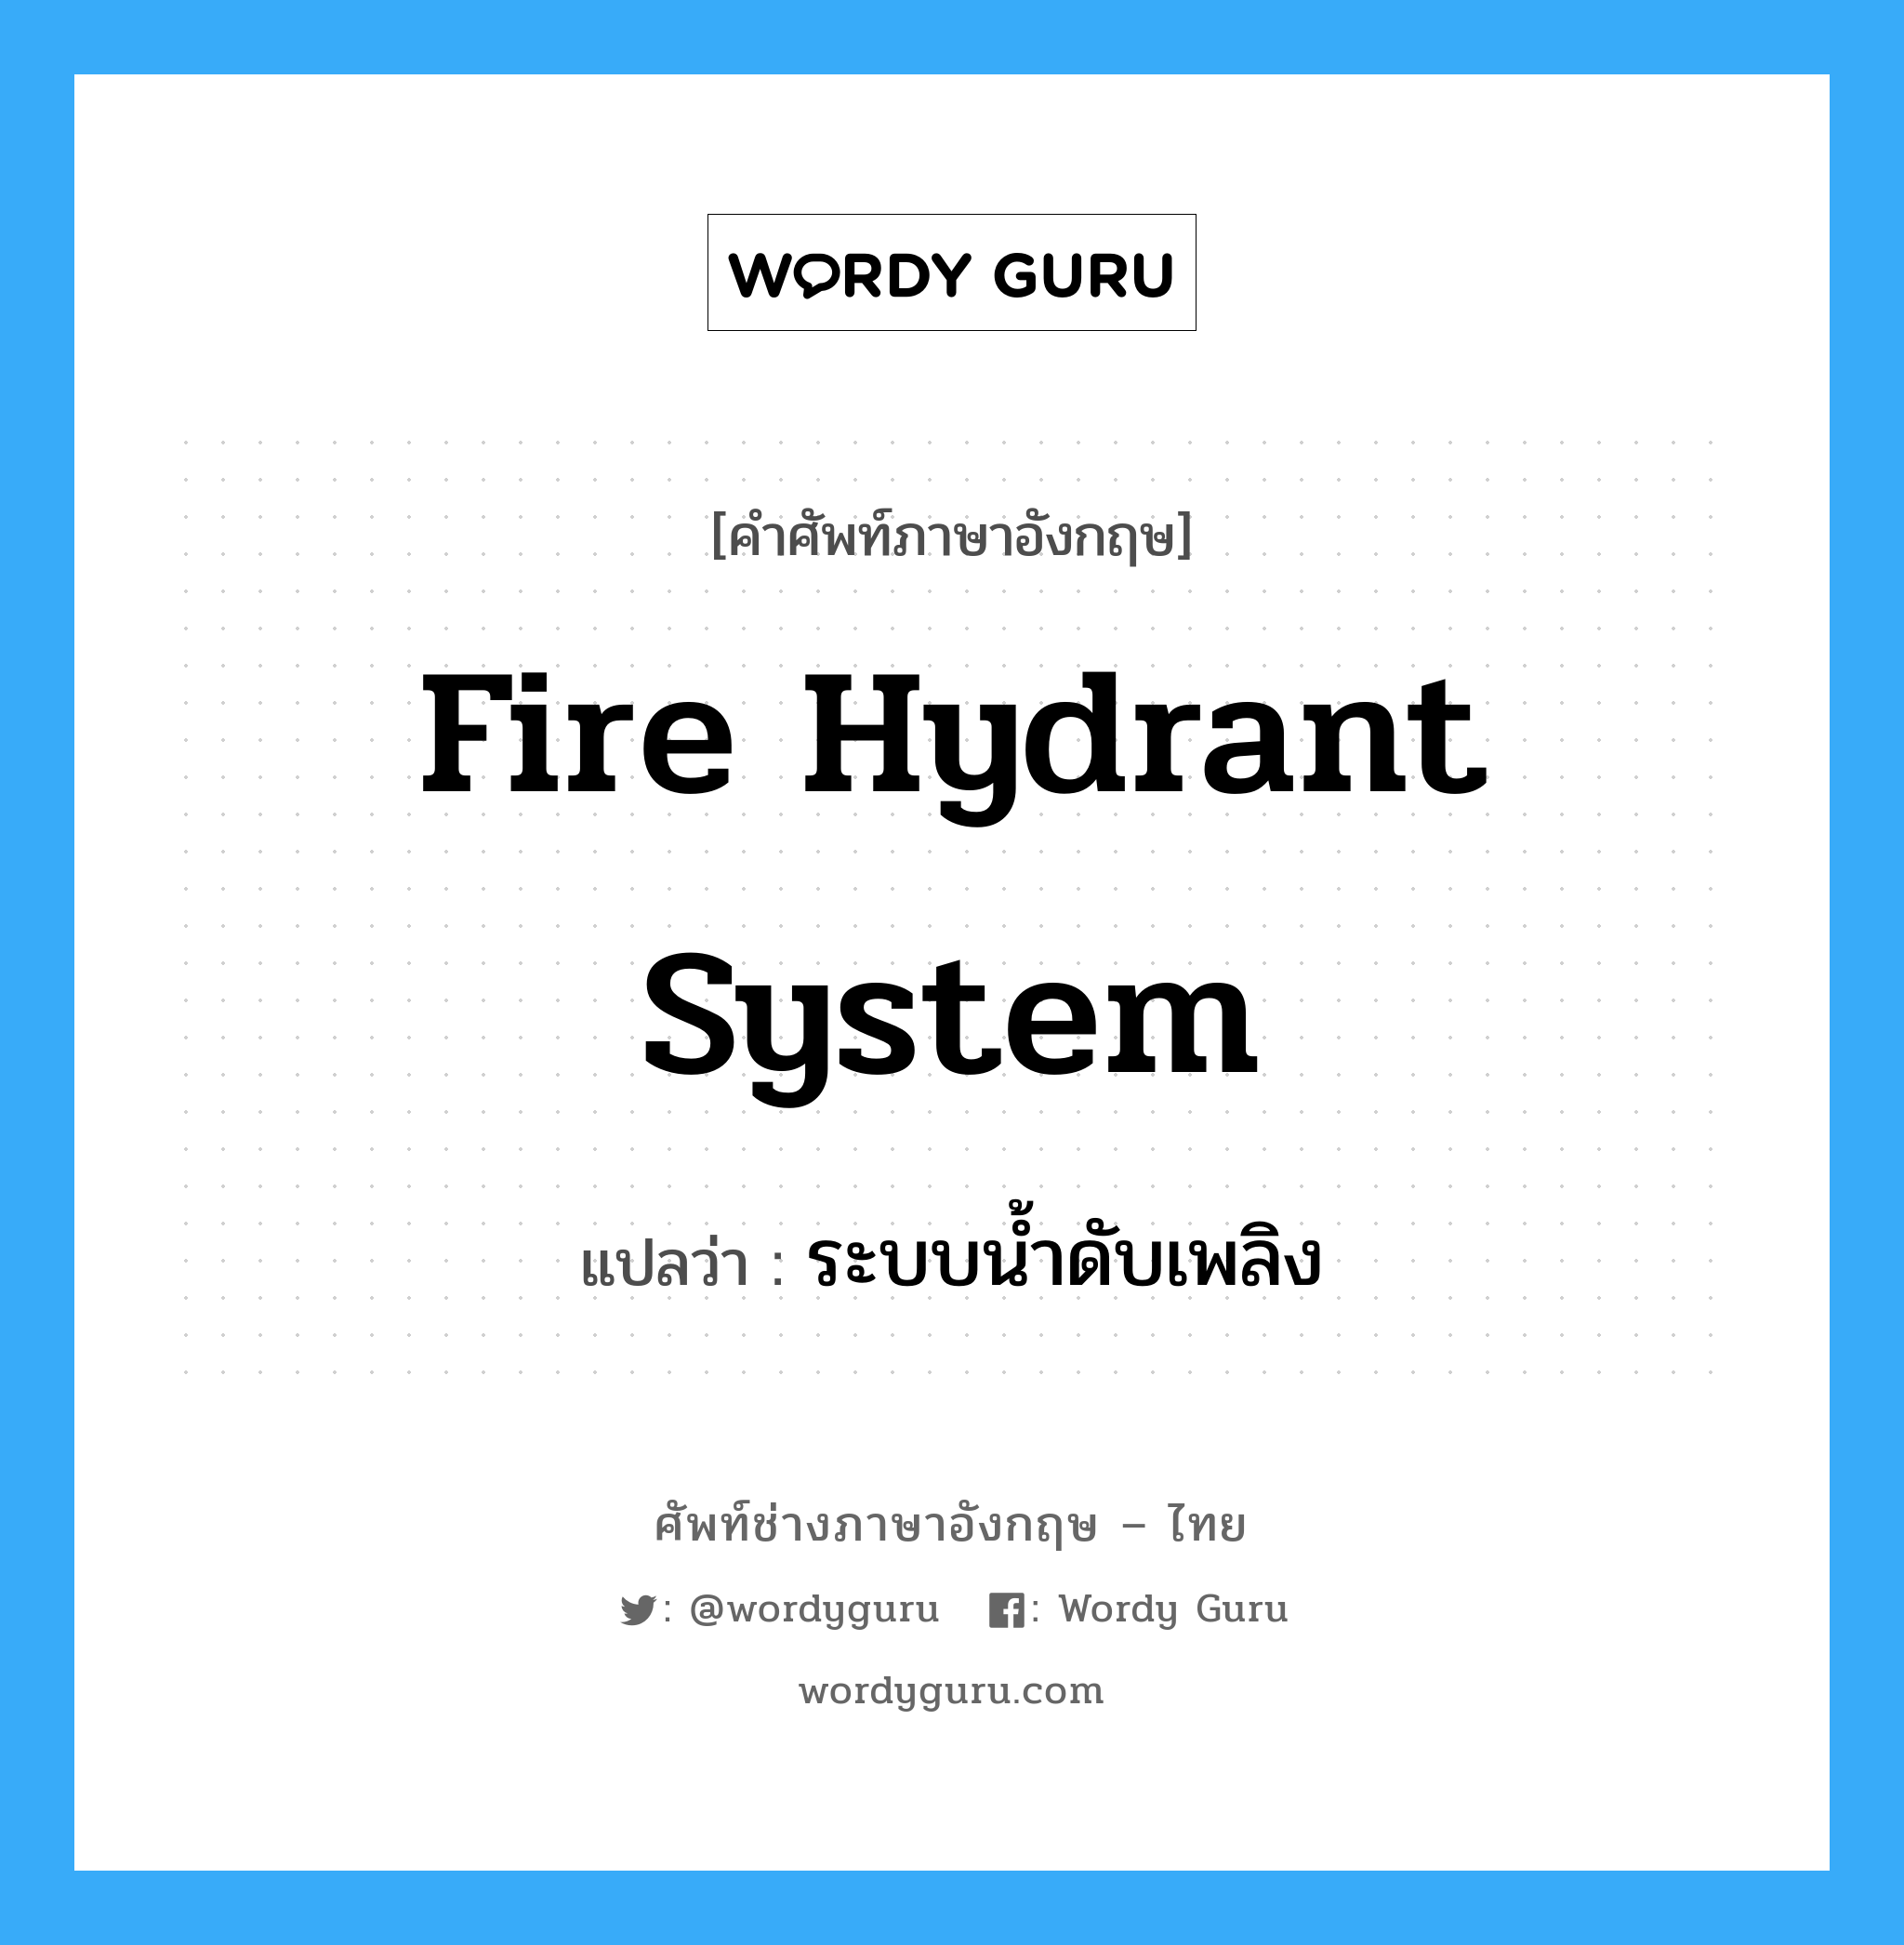 ระบบน้ำดับเพลิง ภาษาอังกฤษ?, คำศัพท์ช่างภาษาอังกฤษ - ไทย ระบบน้ำดับเพลิง คำศัพท์ภาษาอังกฤษ ระบบน้ำดับเพลิง แปลว่า fire hydrant system